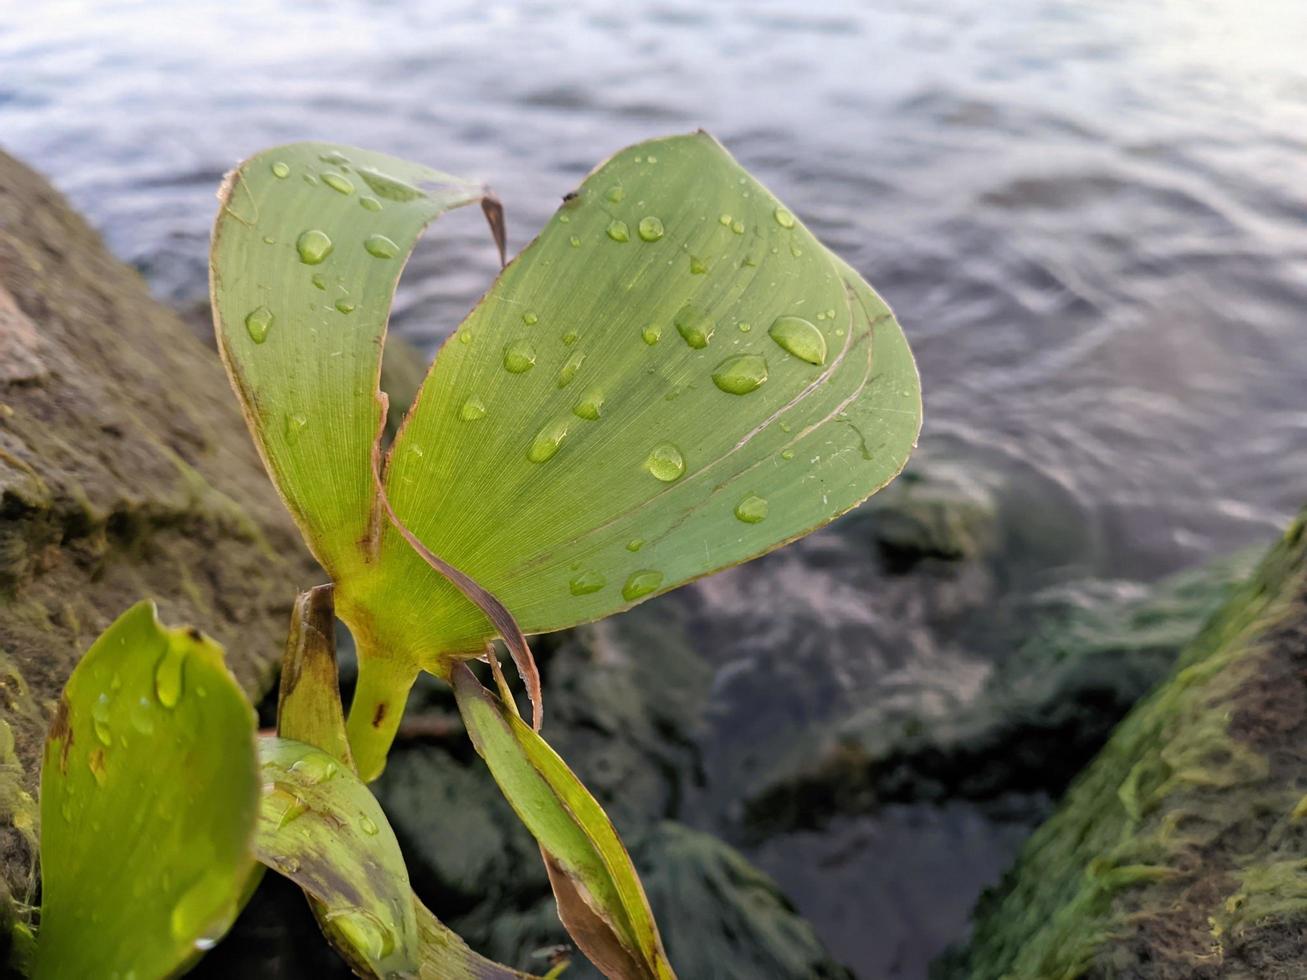 Regentropfen auf frischen grünen Blättern foto